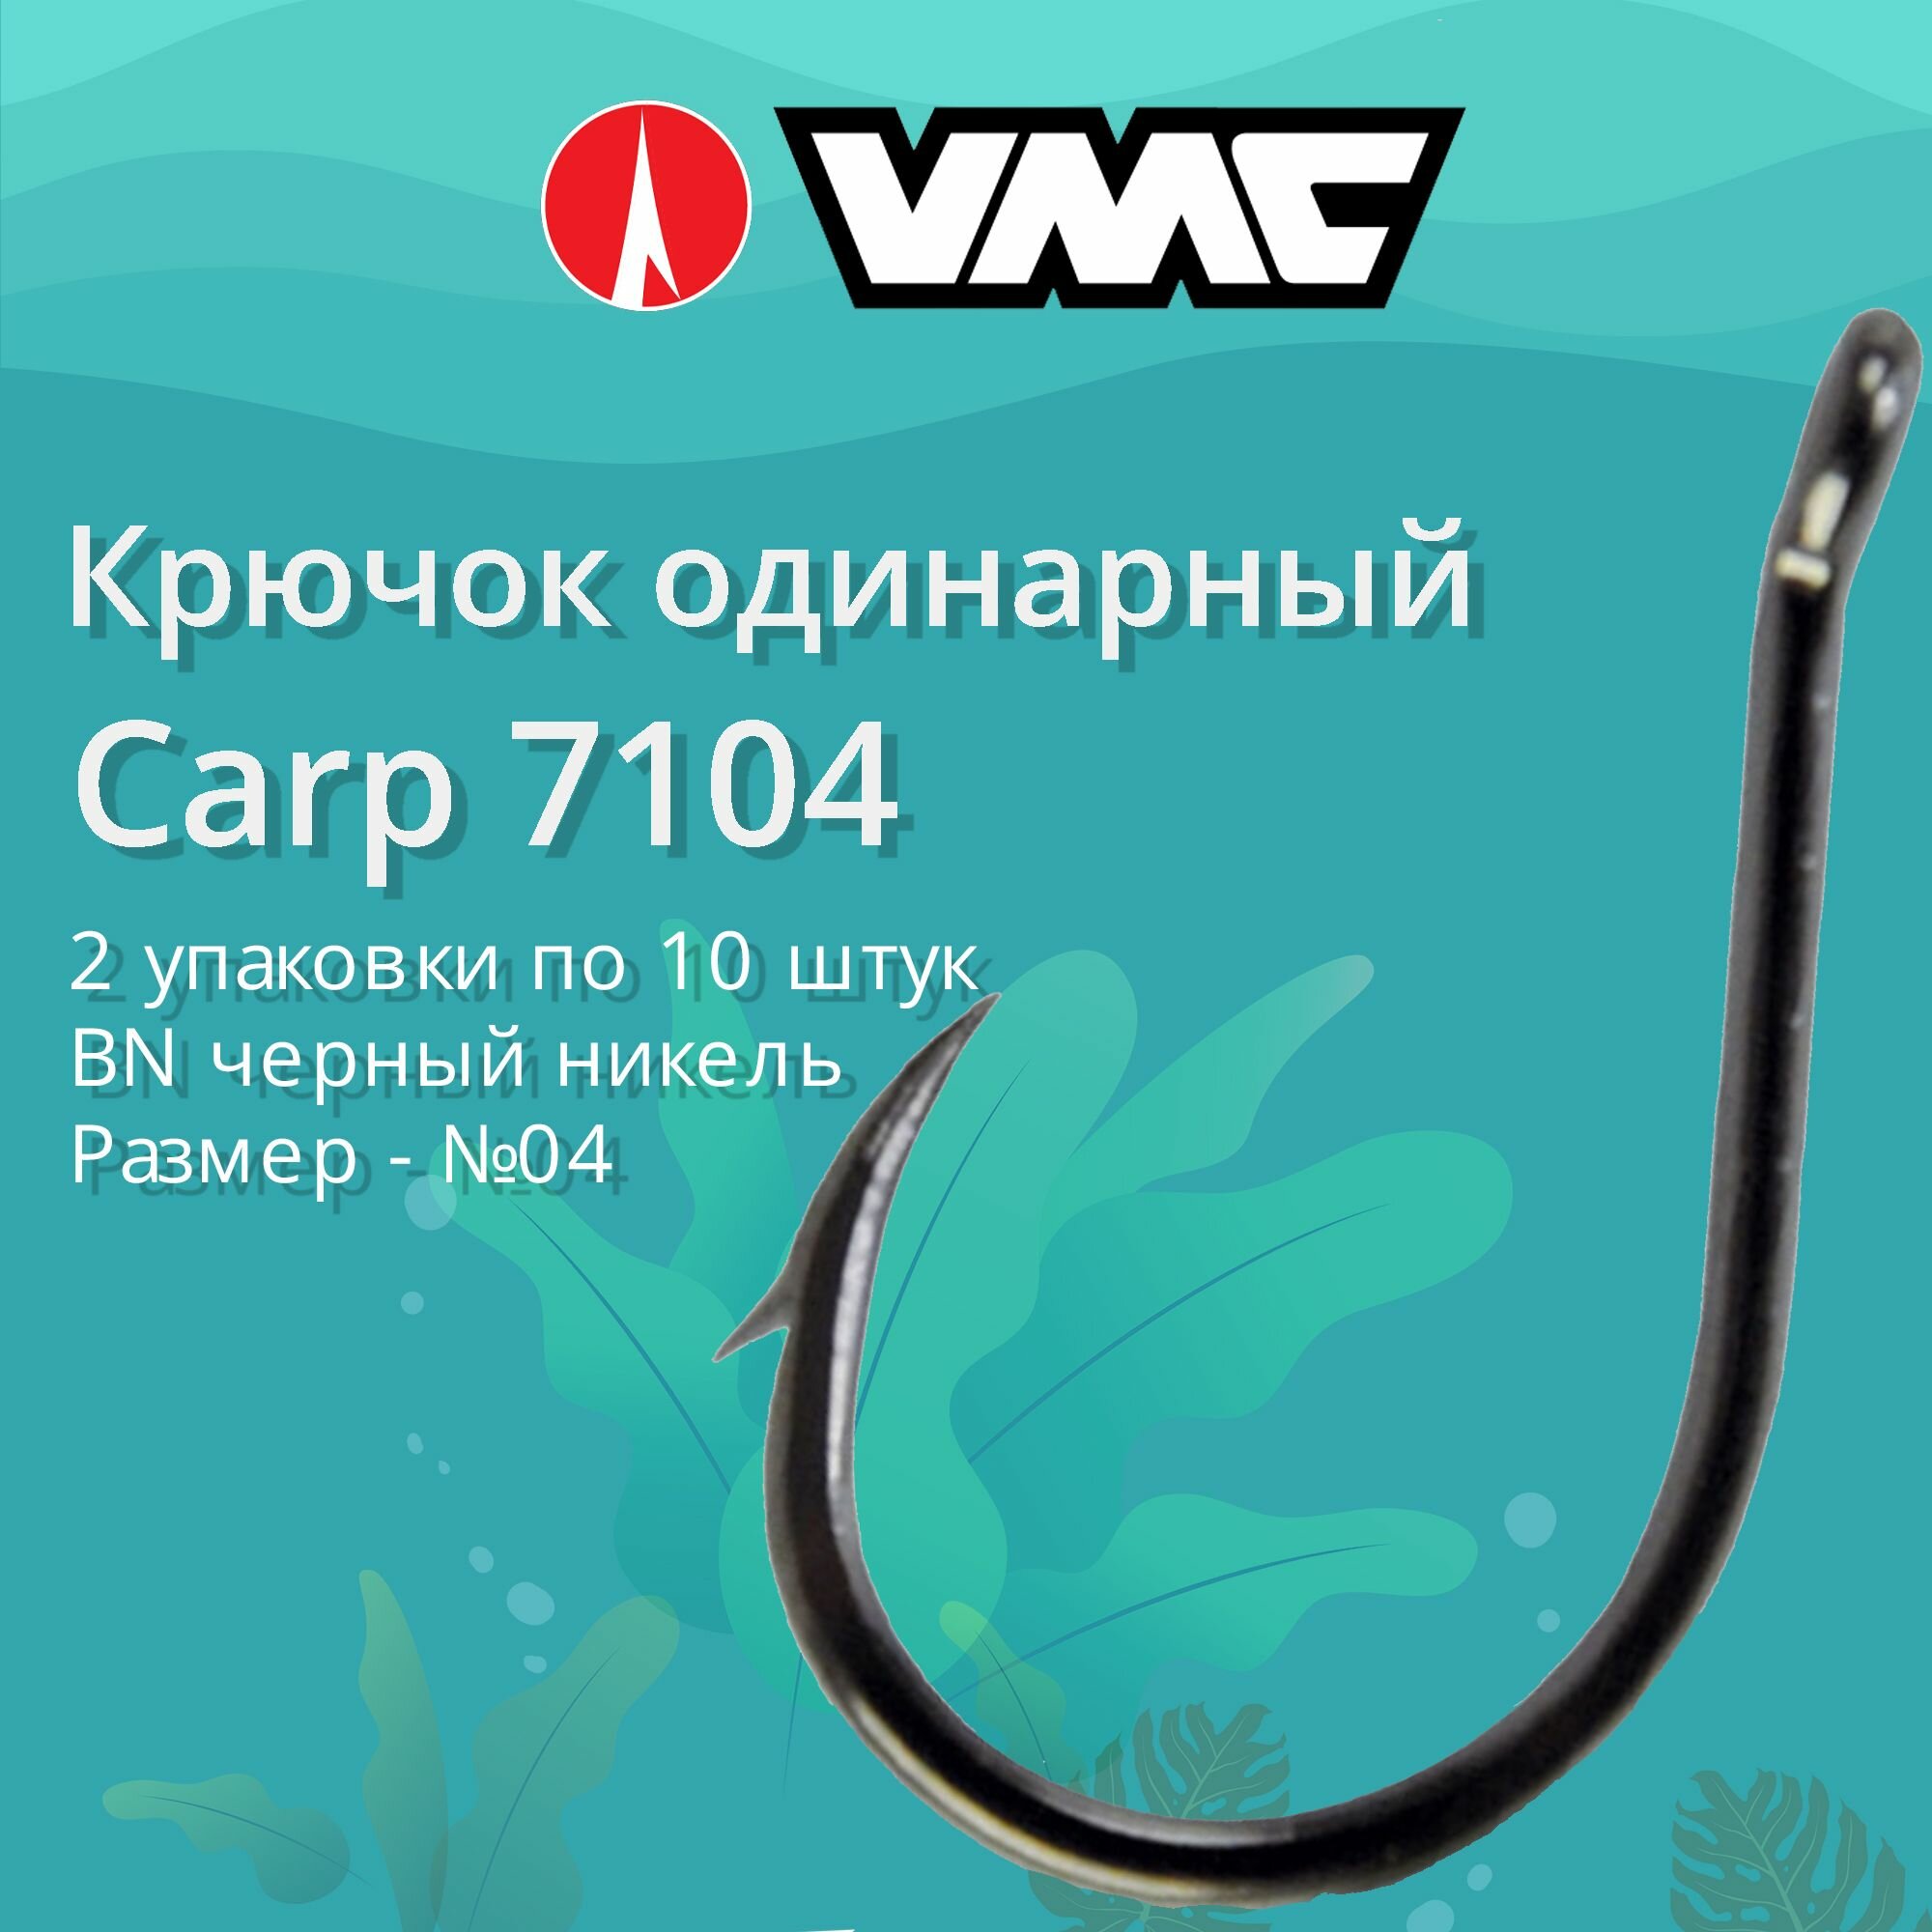 Крючки для рыбалки (одинарный) VMC Carp 7104 BN (черн. никель) №04, 2 упаковки по 10 штук